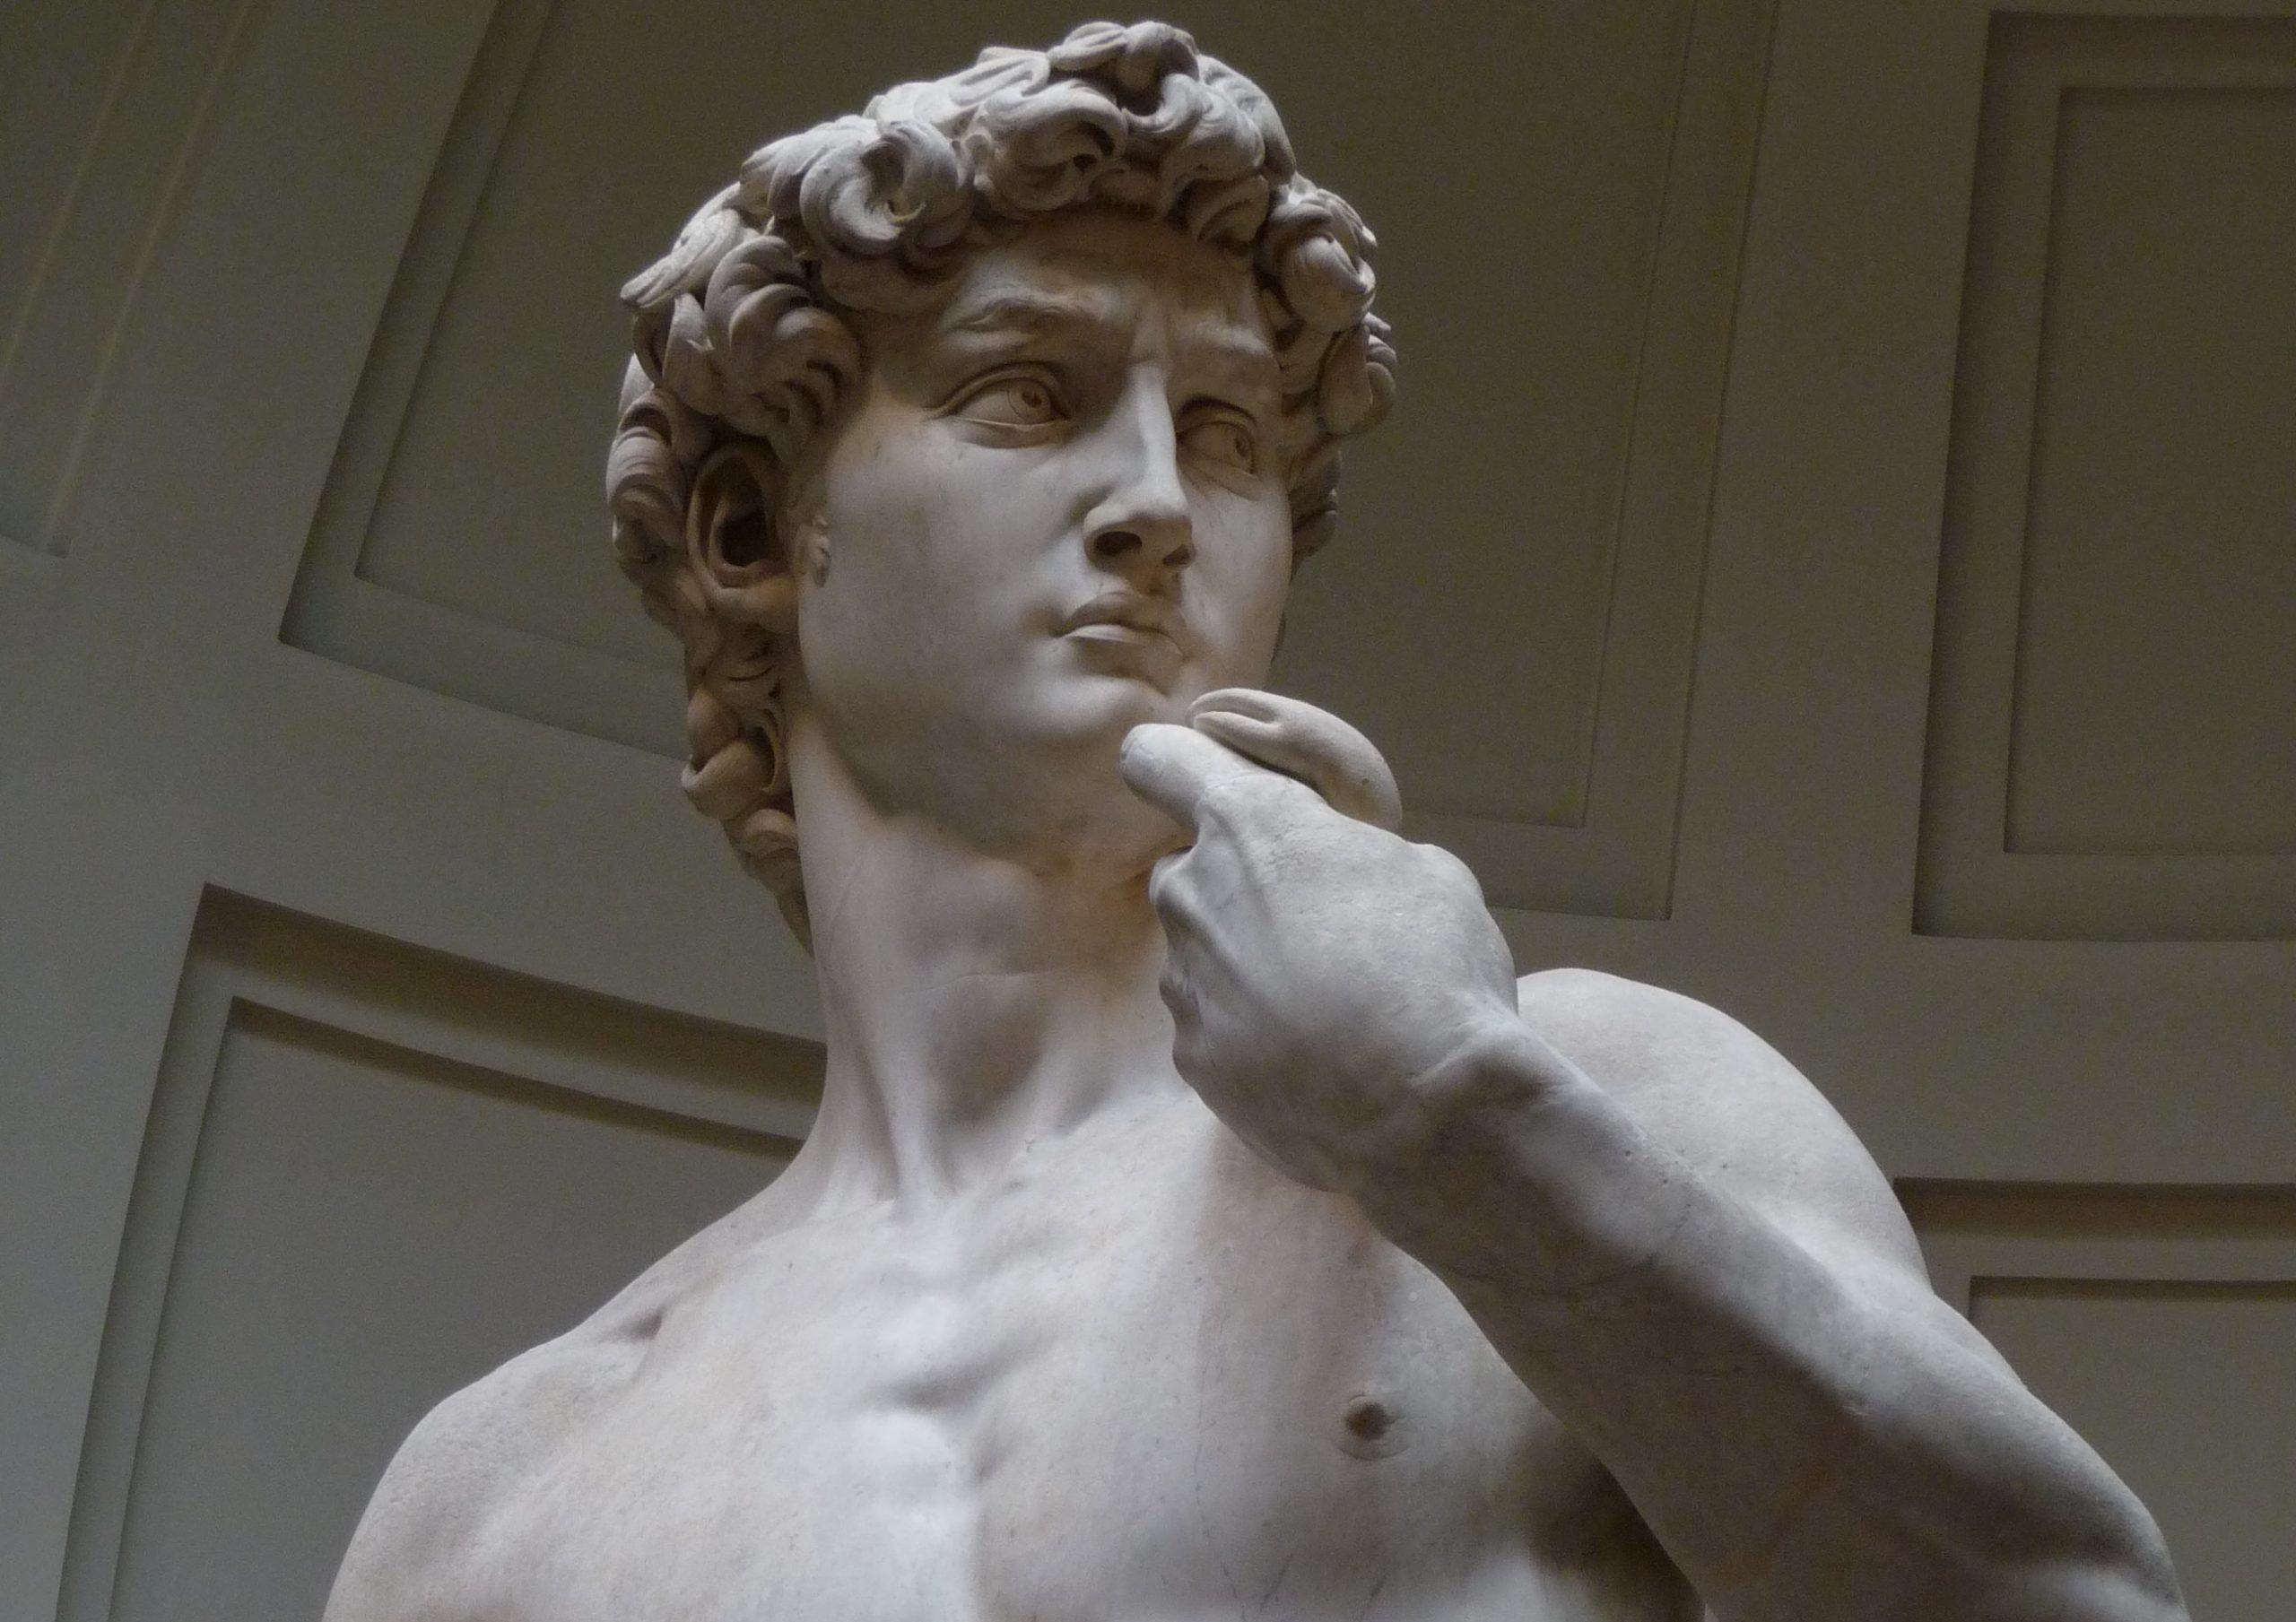 Művészeti remekmű vagy indokolatlan szexualitás? Mit gondol a modern ember Dávid szobráról?